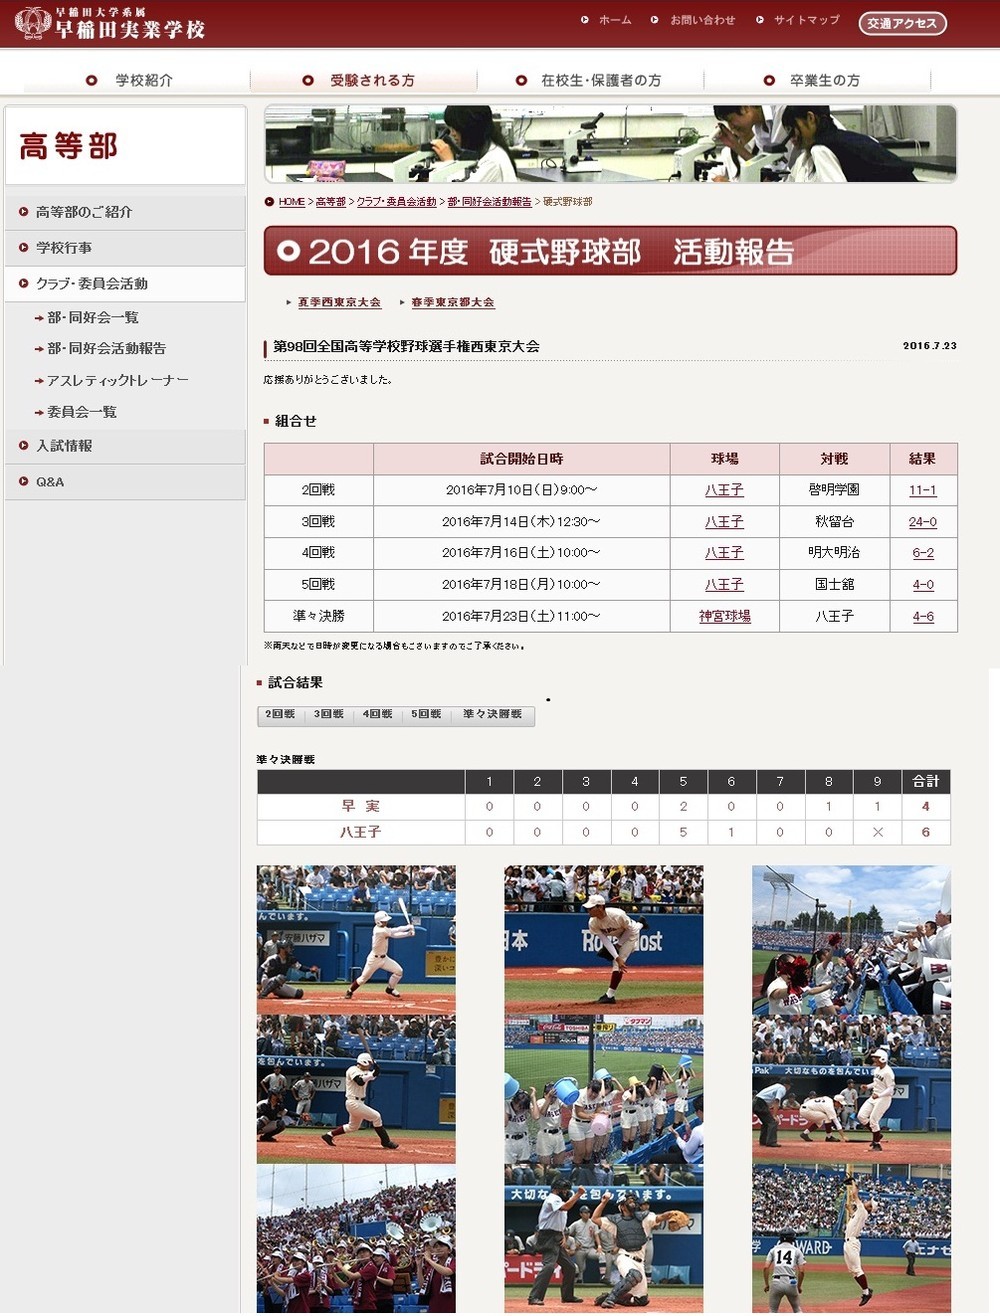 早稲田実業のホームページでは多数の写真とともに野球部の健闘ぶりを報告していた